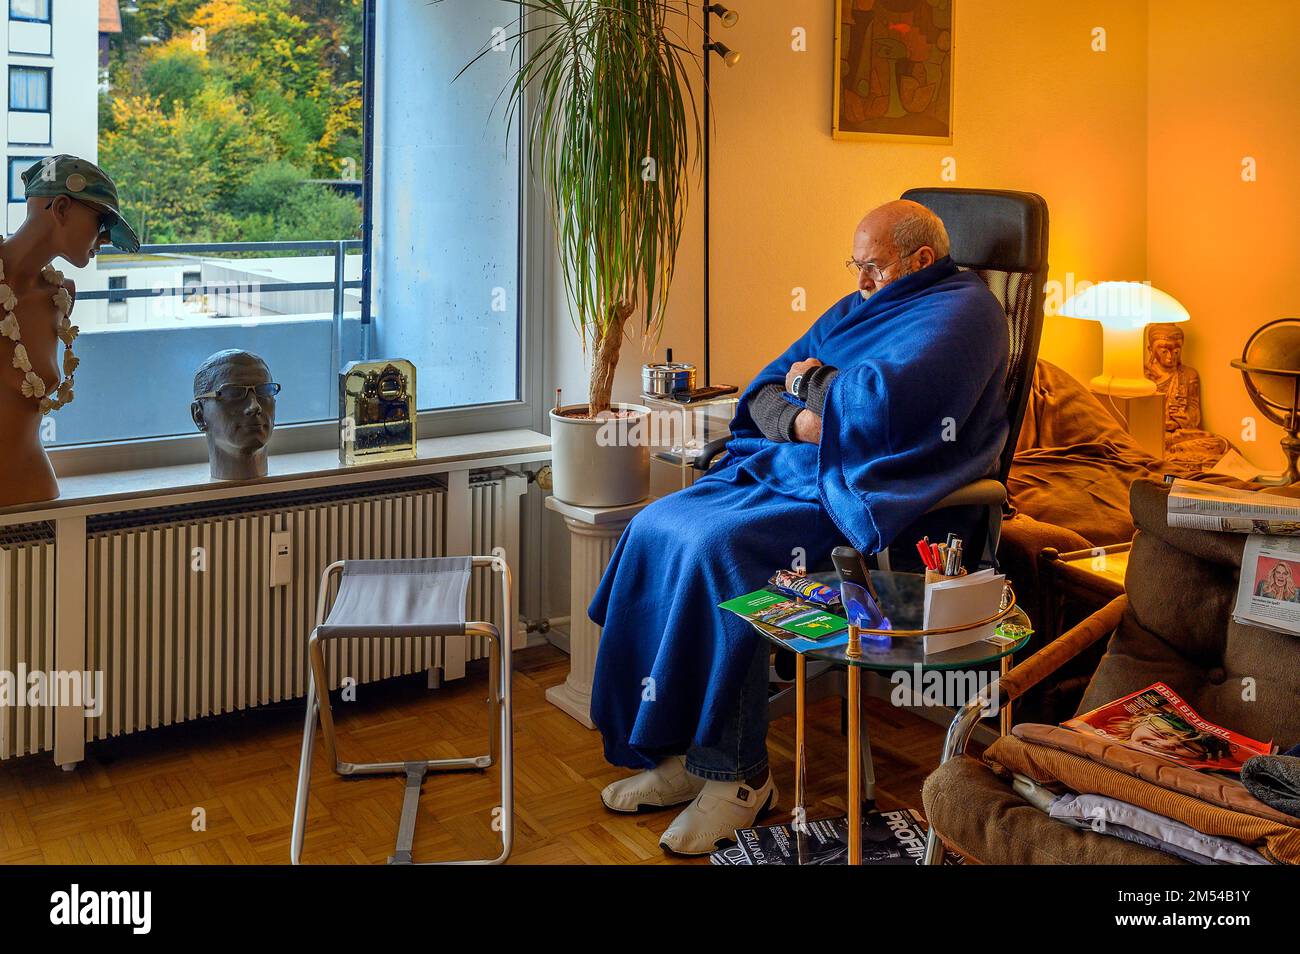 Viejo envuelto en mantas, ahorrar energía, congelar debido a Putin, ahorrar costos de calefacción, baja temperatura ambiente, Baviera, Alemania Foto de stock